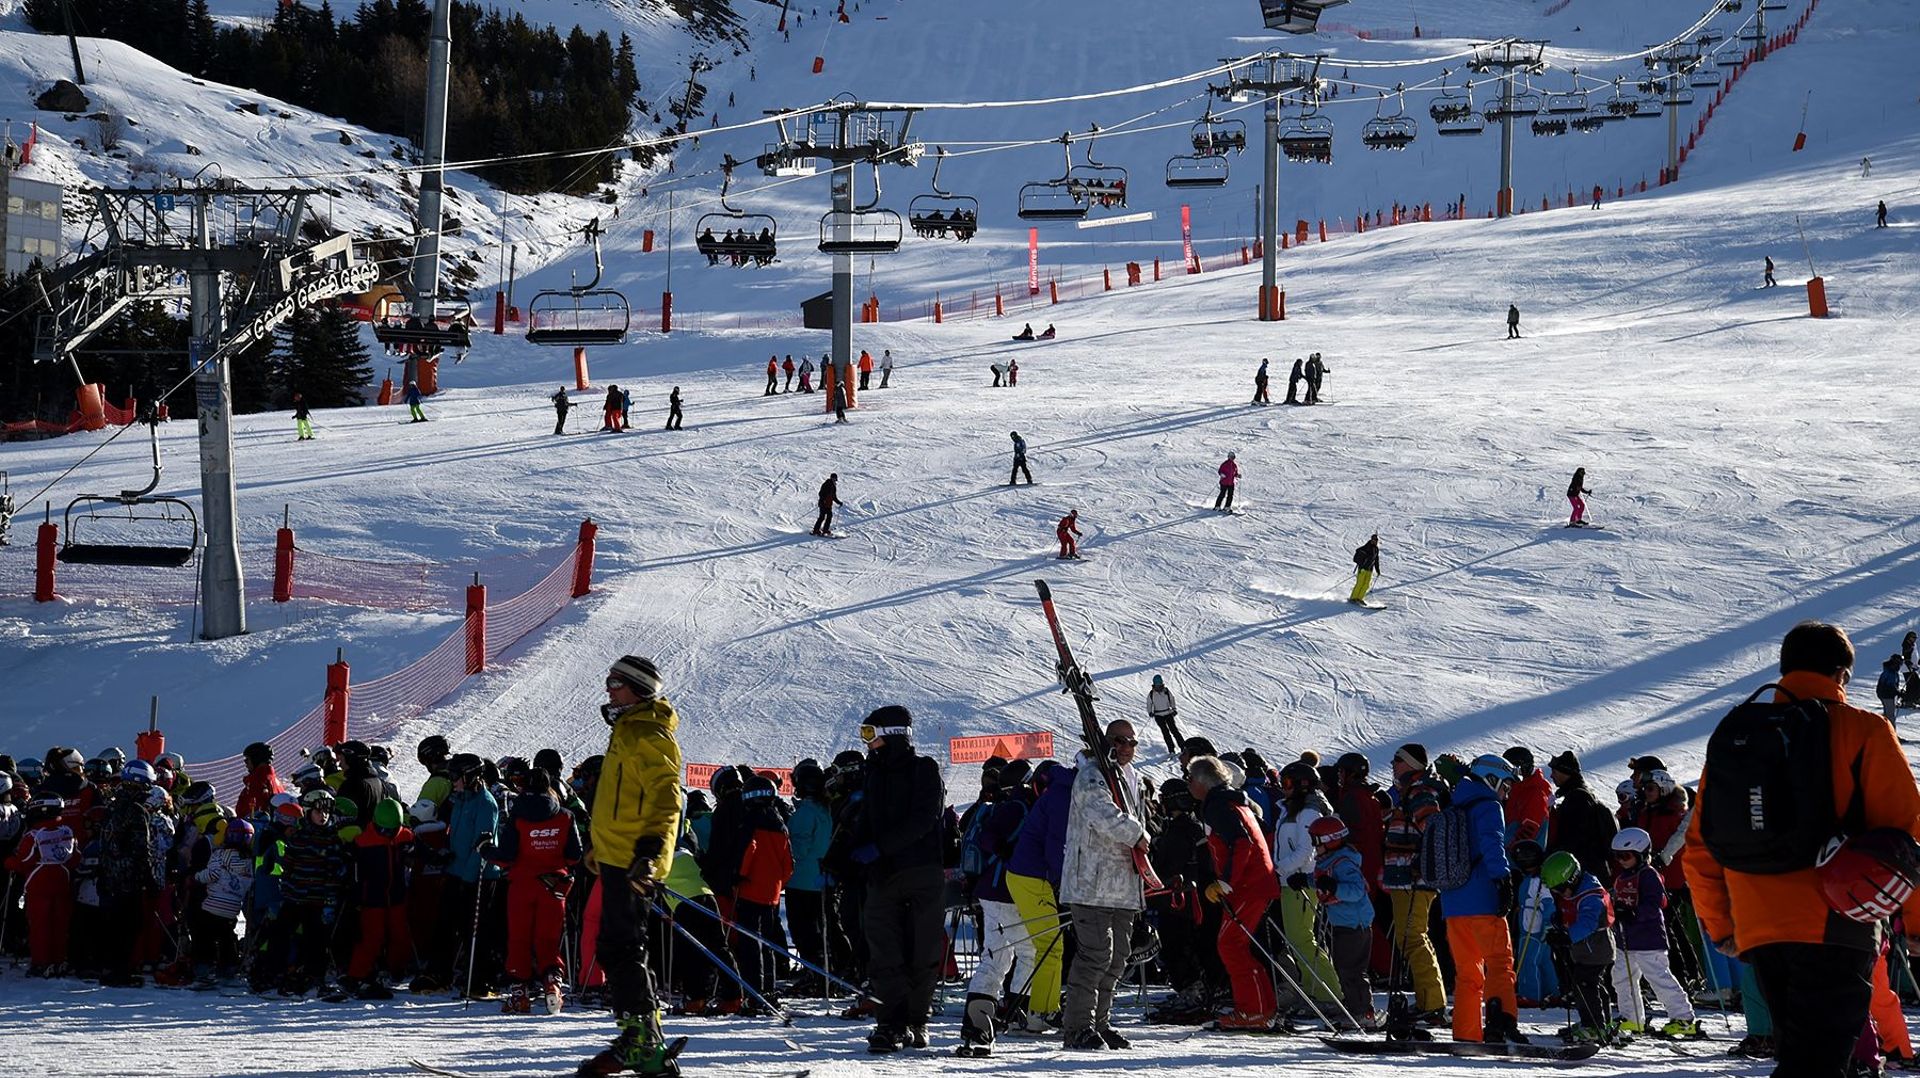 Europ Assistance enregistre une augmentation de 15% des accidents sur les pistes de ski